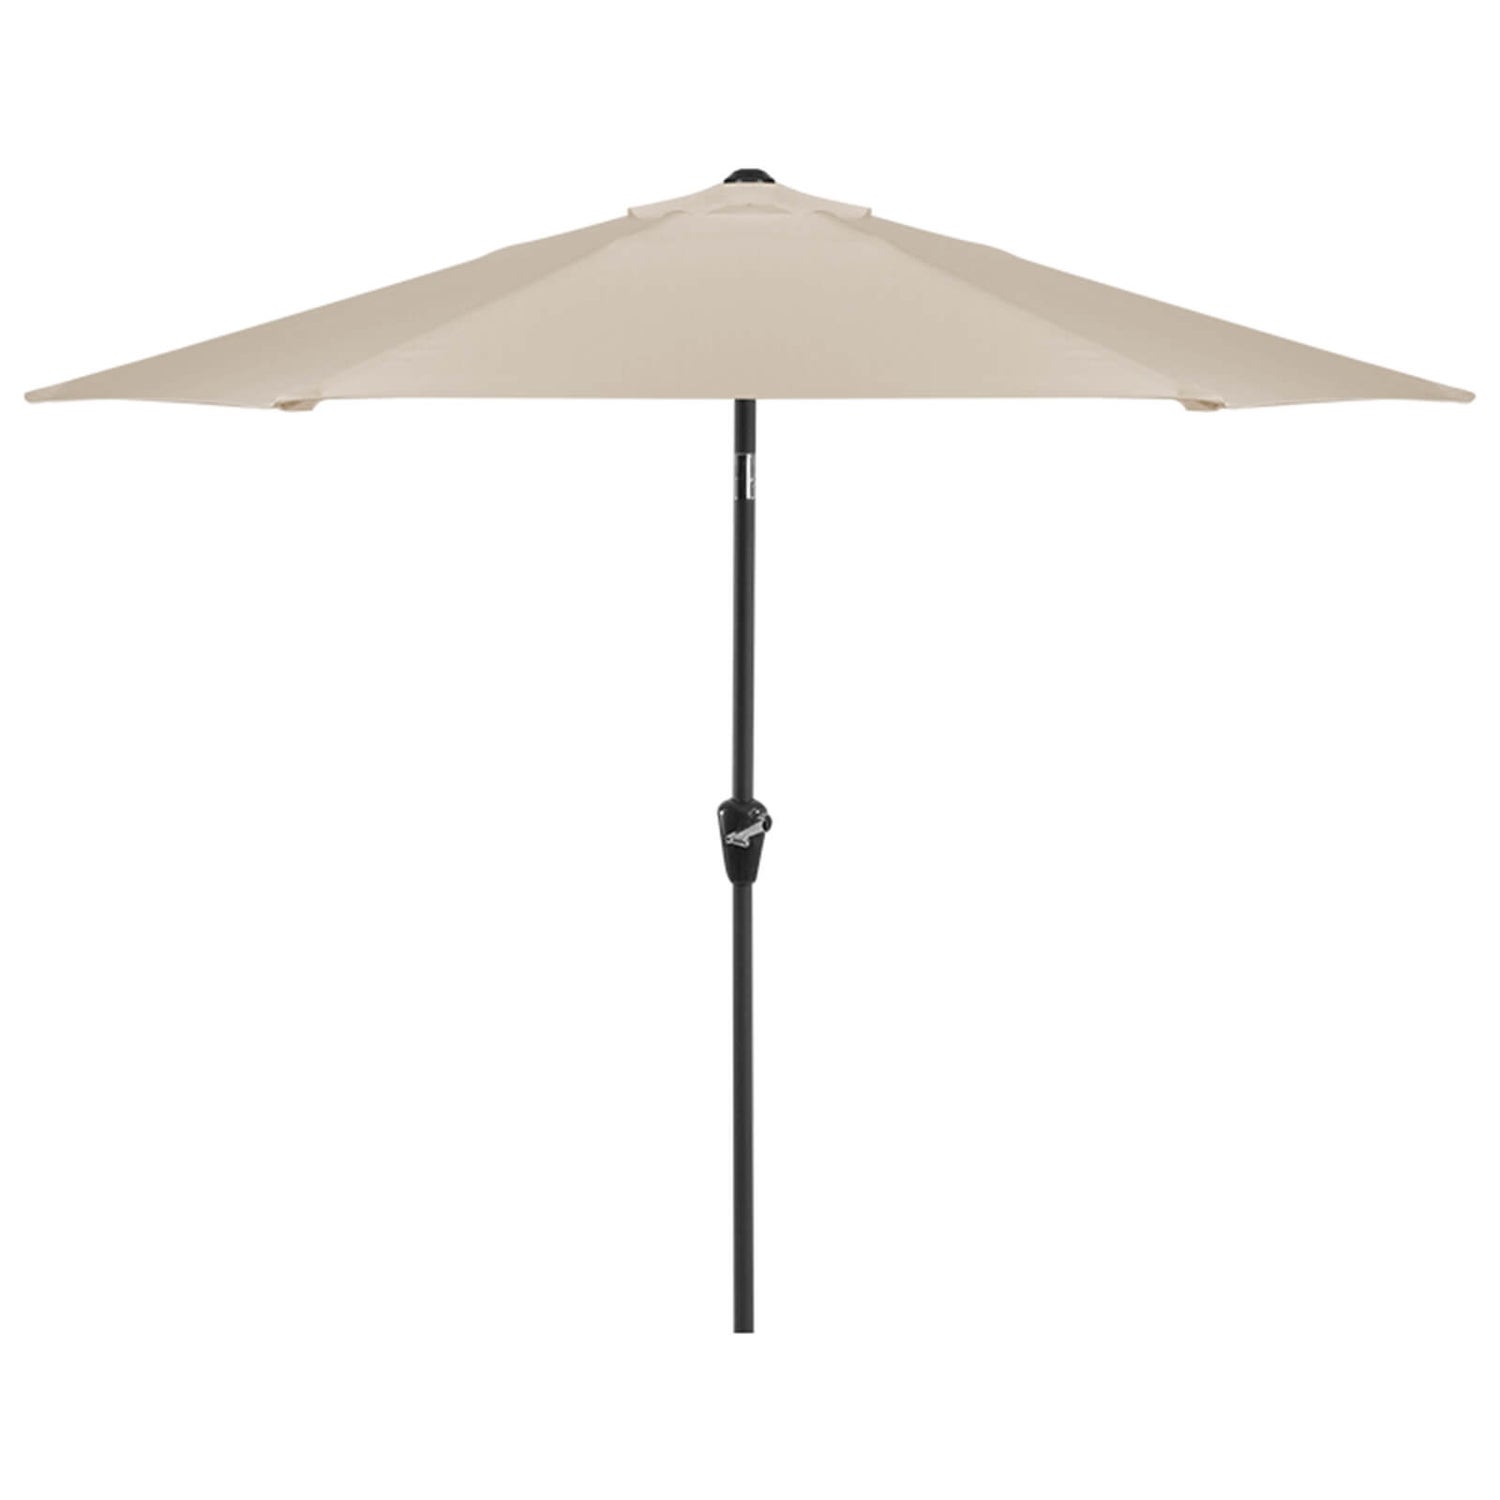 cilinder Assert Mijnenveld Aluminium Umbrella Parasol - 3m - Beige | Homebase